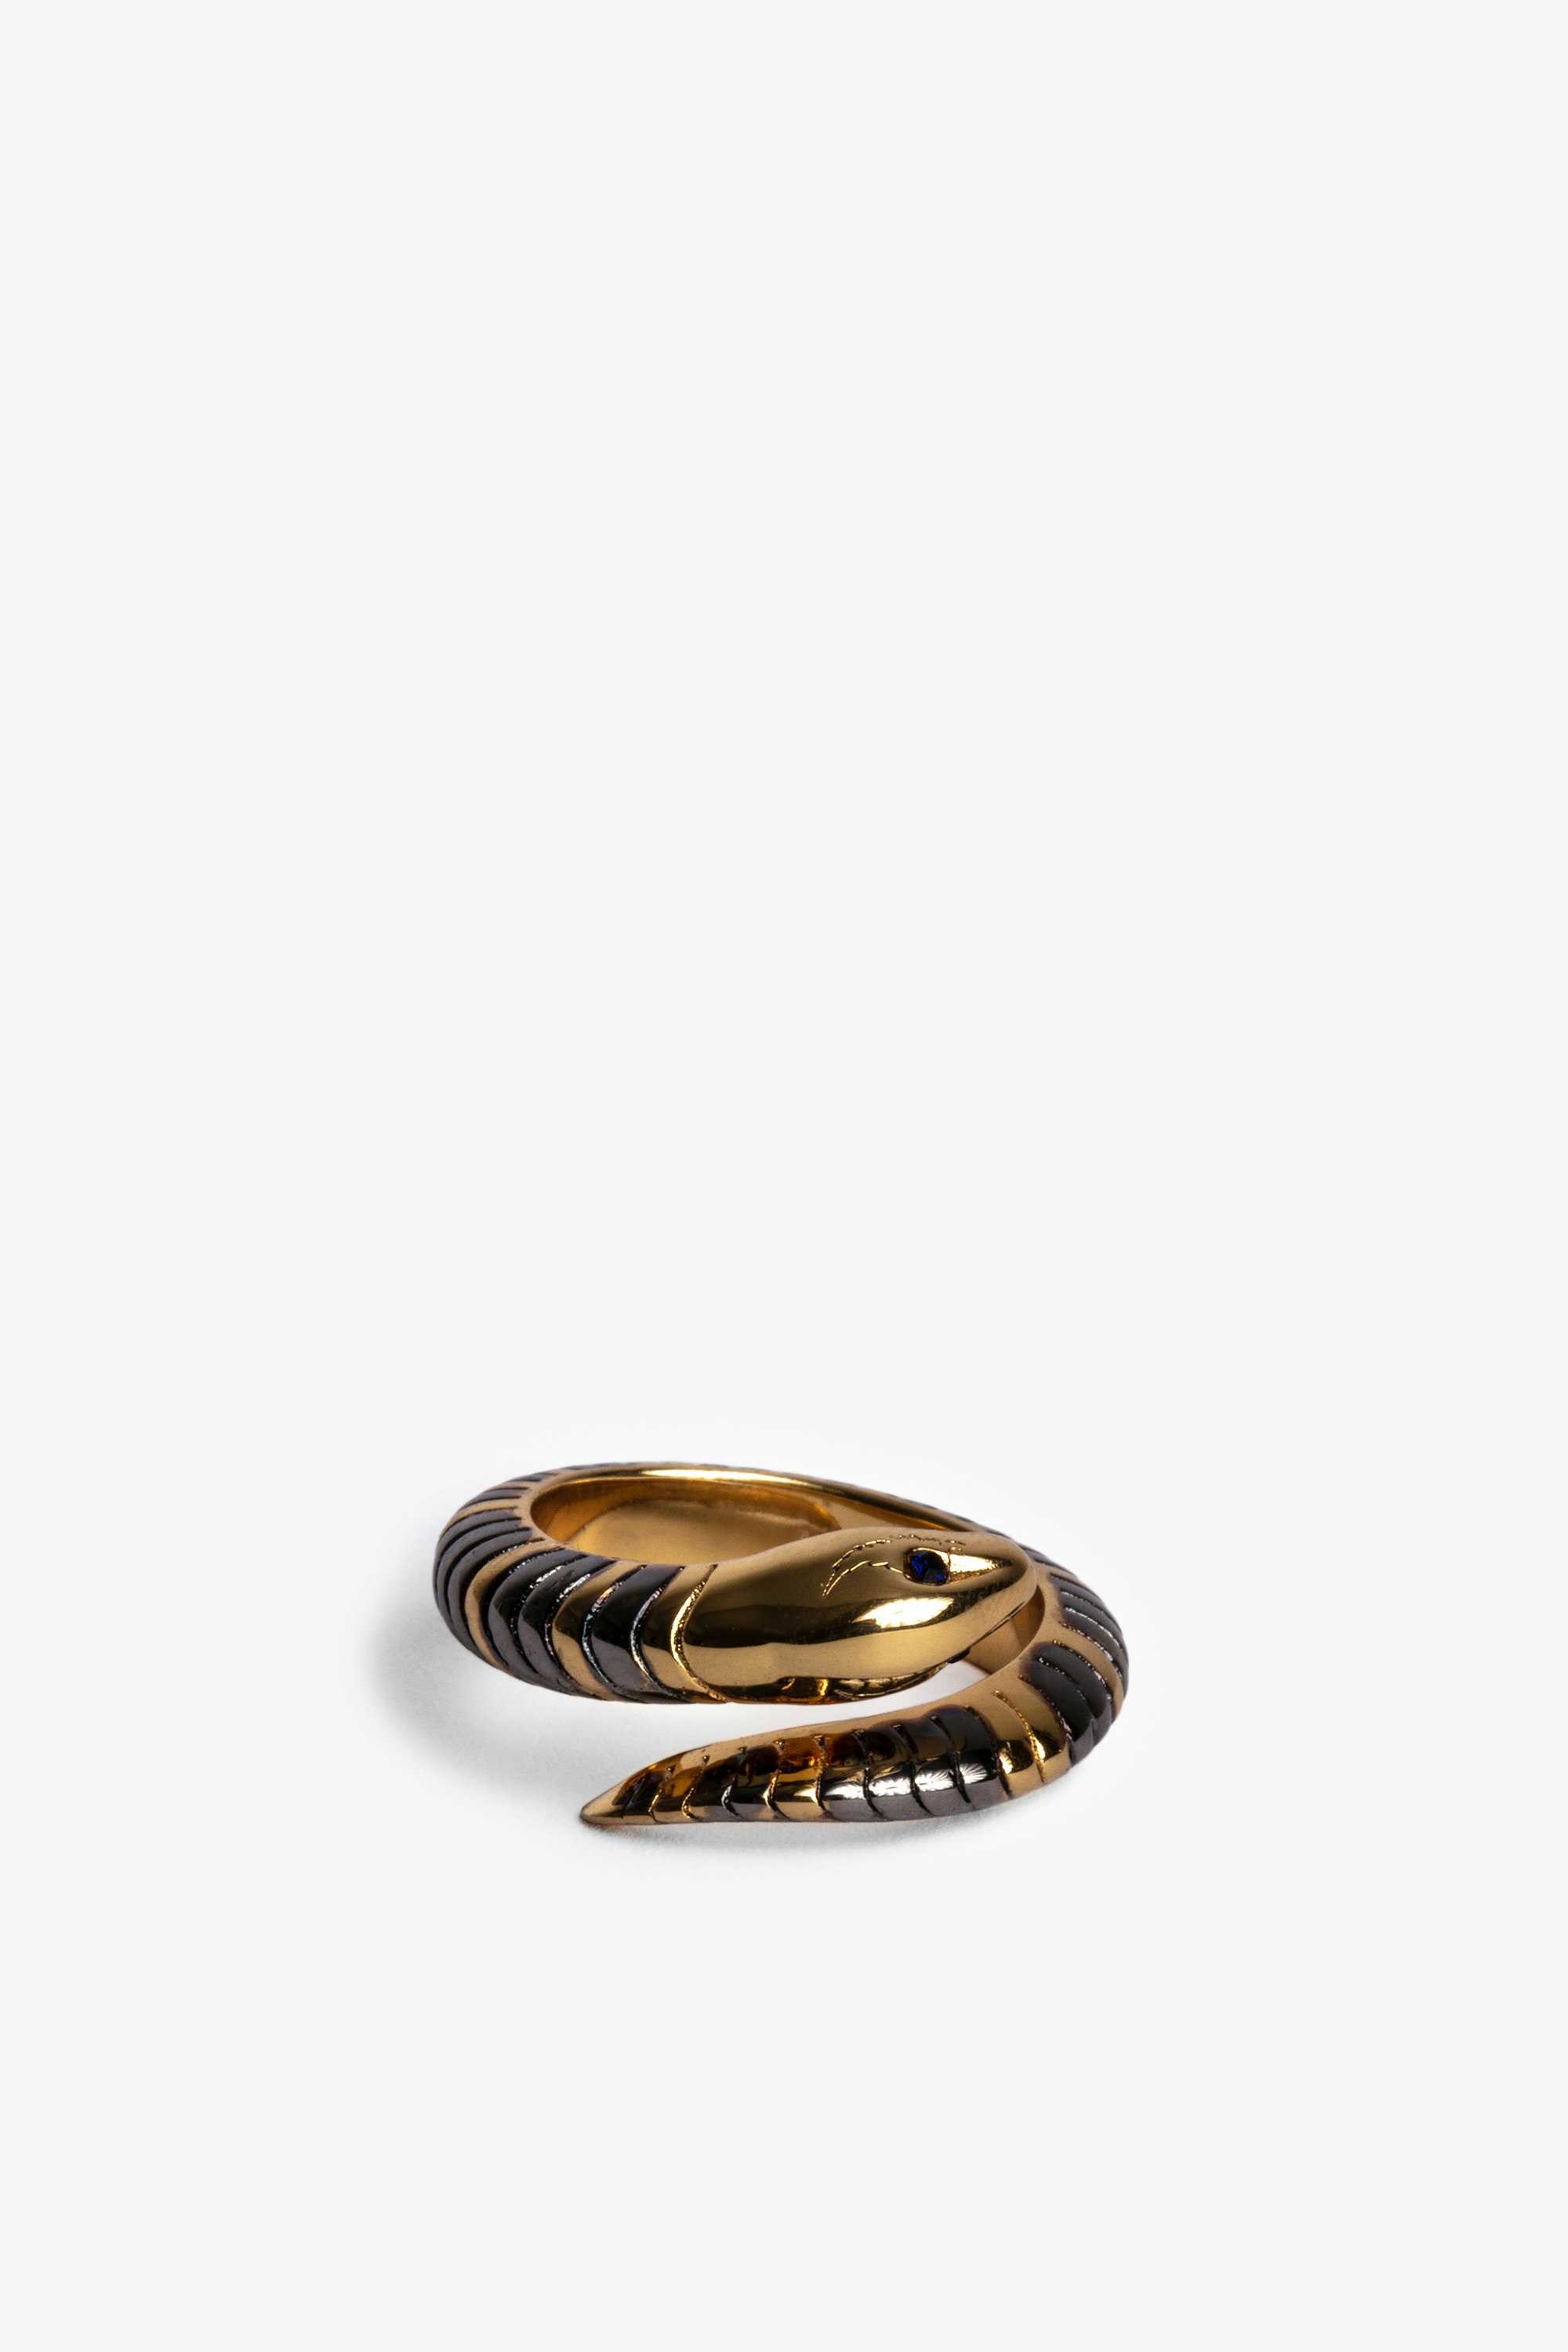 Snake Ring - Gold-tone brass snake ring.